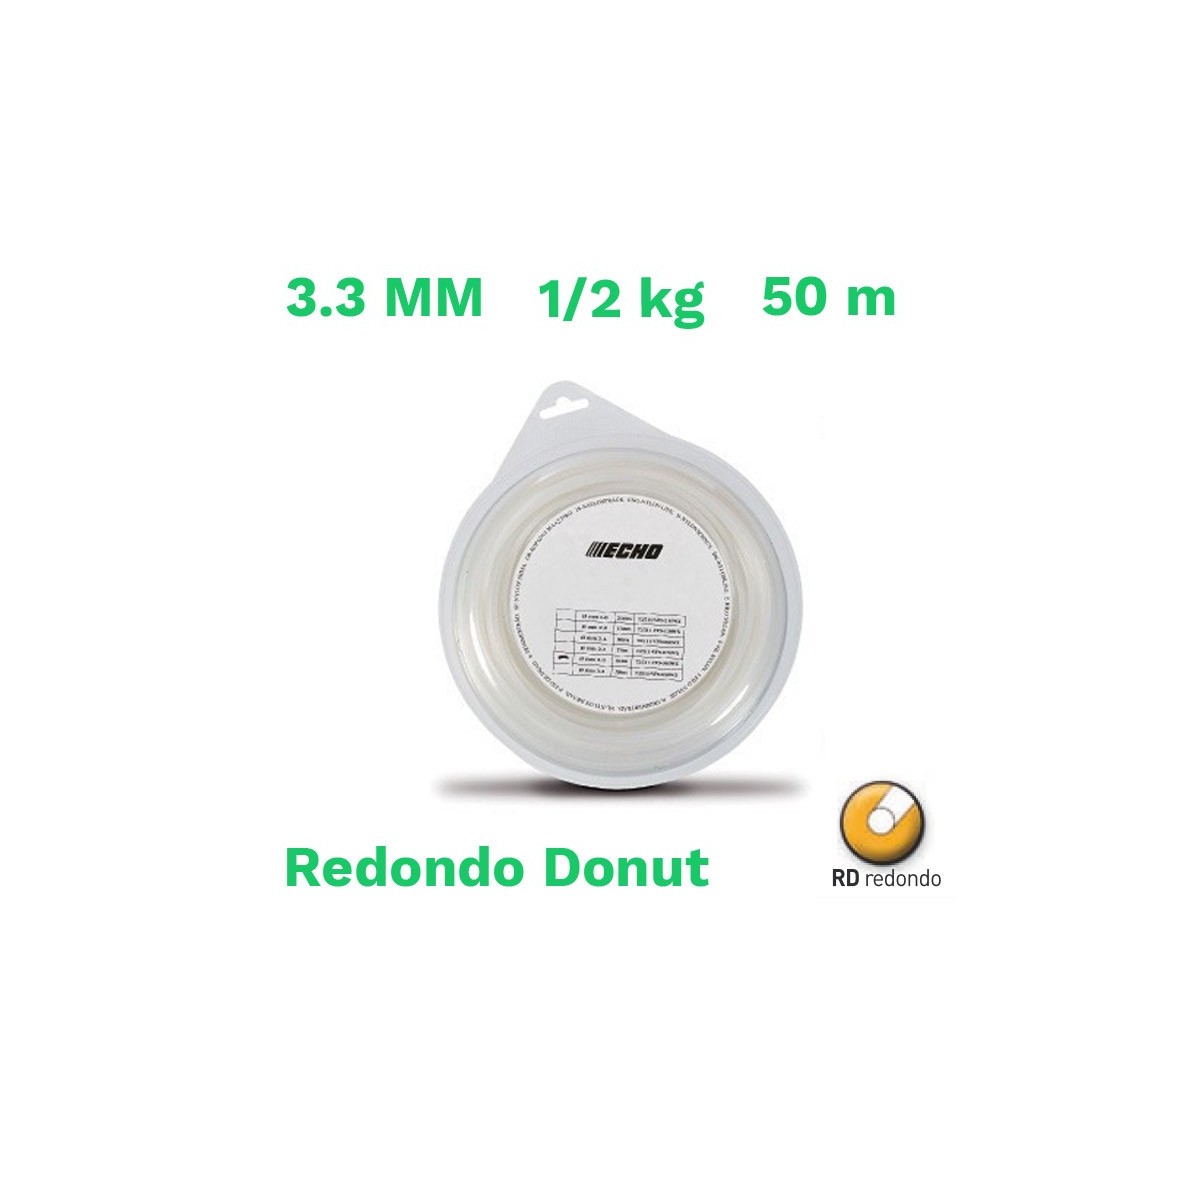 Echo hilo nylon redondo donut 3